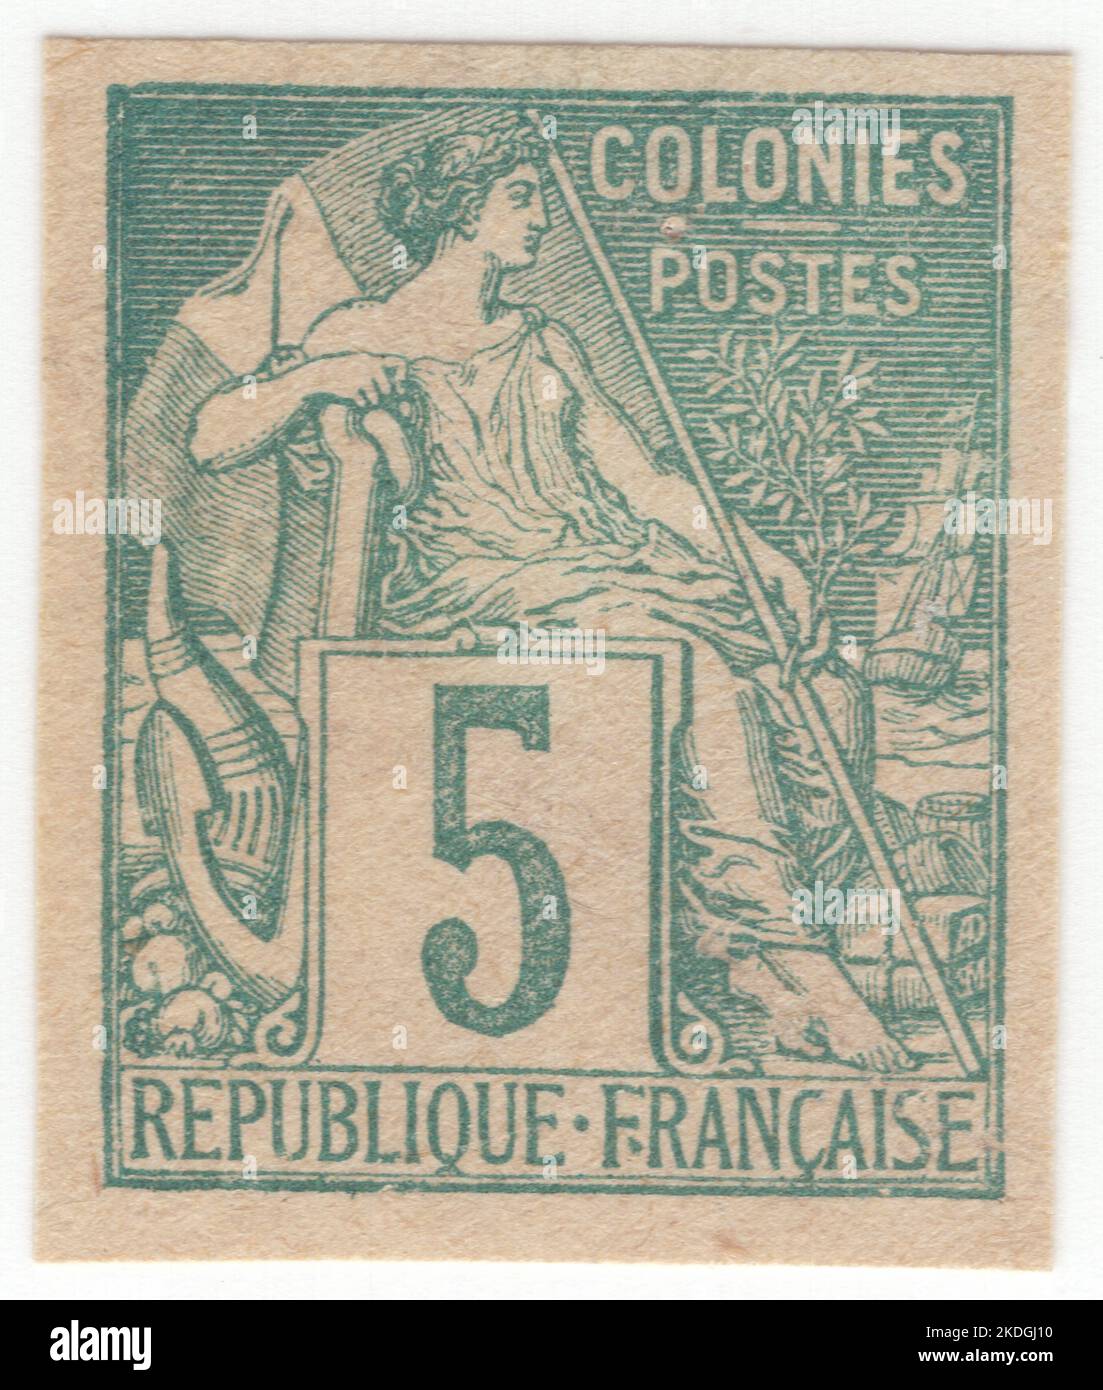 FRANZÖSISCHE KOLONIEN - 1881: Ein 5 Centimes Grün auf grünlicher Briefmarke, das allegorische weibliche Figur 'Commerce' zeigt, die allein sitzt und „KOLONIEN“ einschreibt. Serie Französische Kolonien von Alphee Dubois Stockfoto